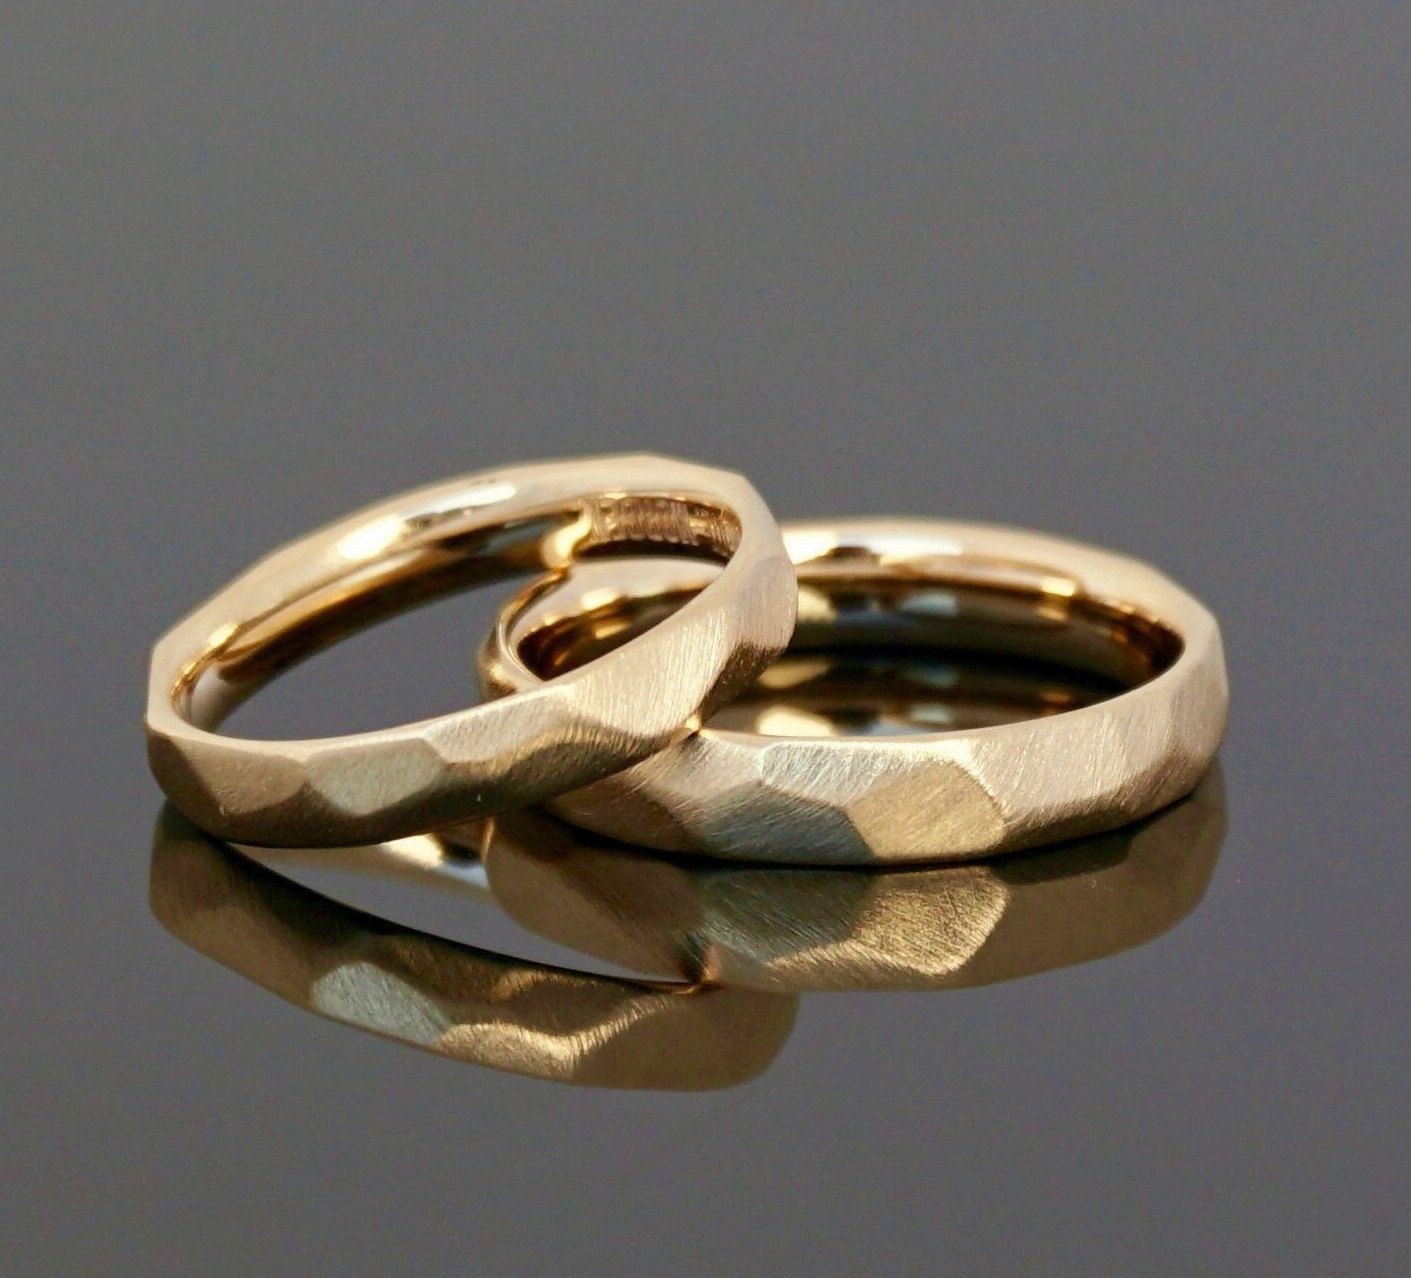 Wedding Rings Multifaceted Regarding Newest Multifaceted Rings (View 2 of 25)